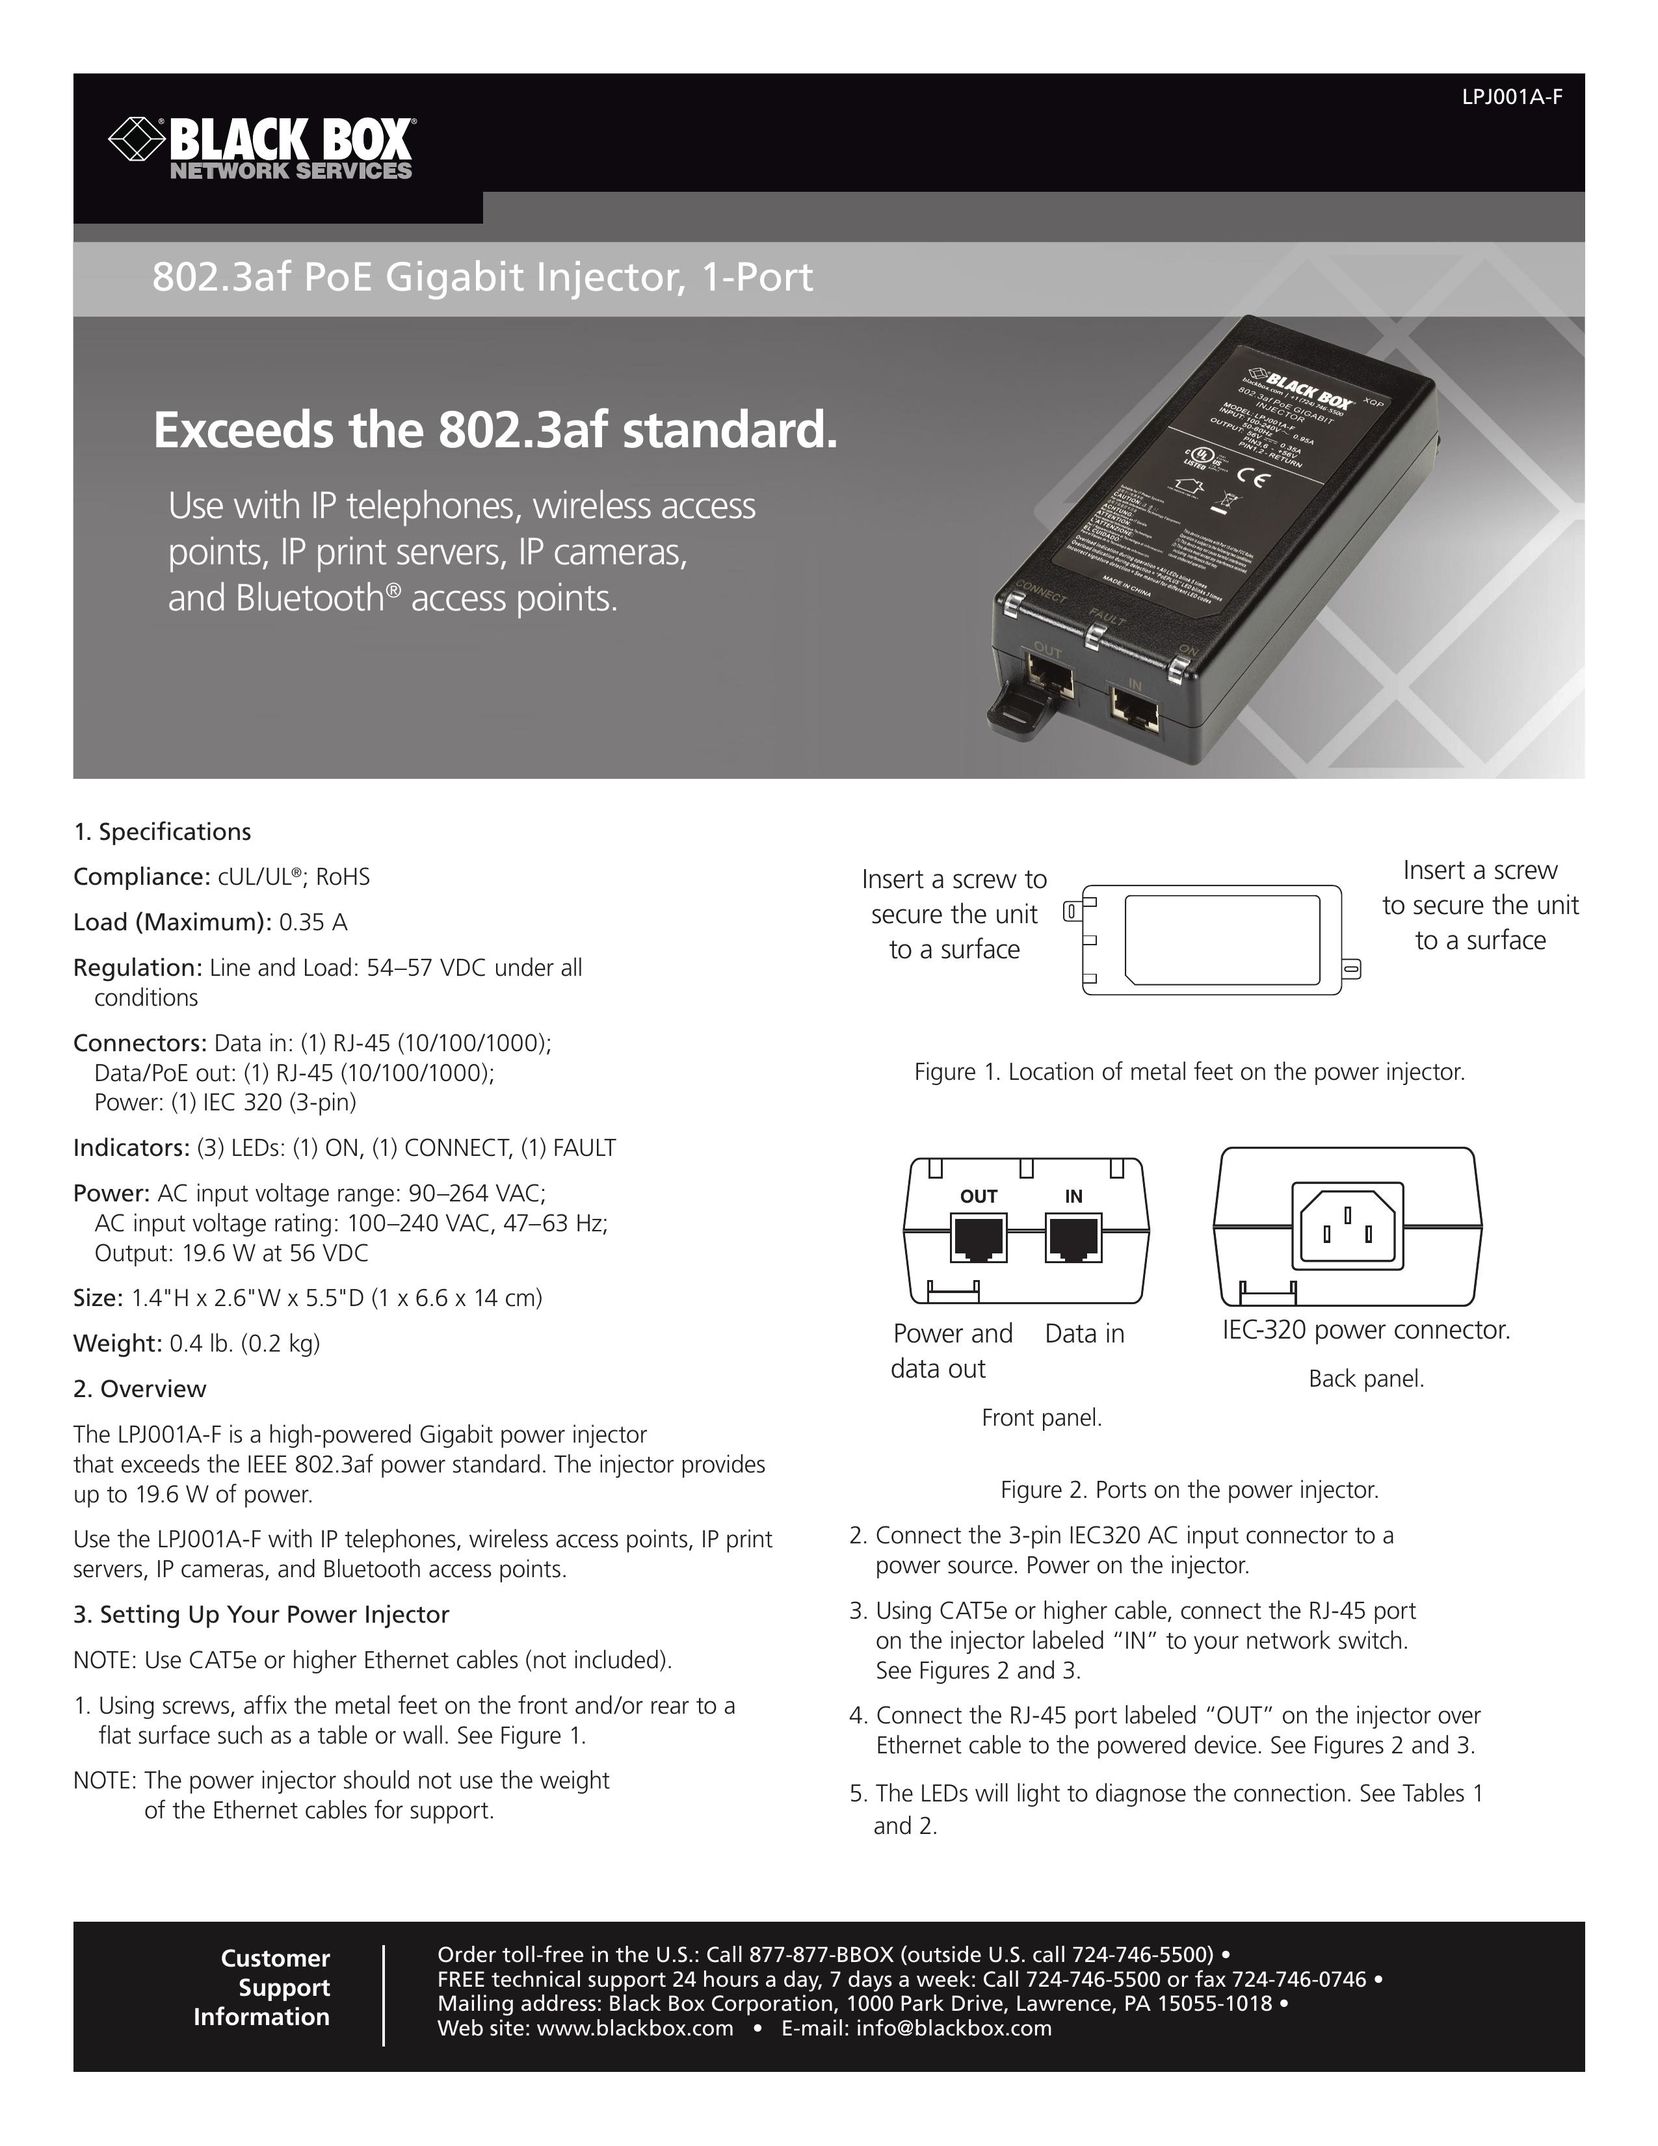 Black Box 802.3af PoE Gigabit Injector, 1-Port Computer Hardware User Manual